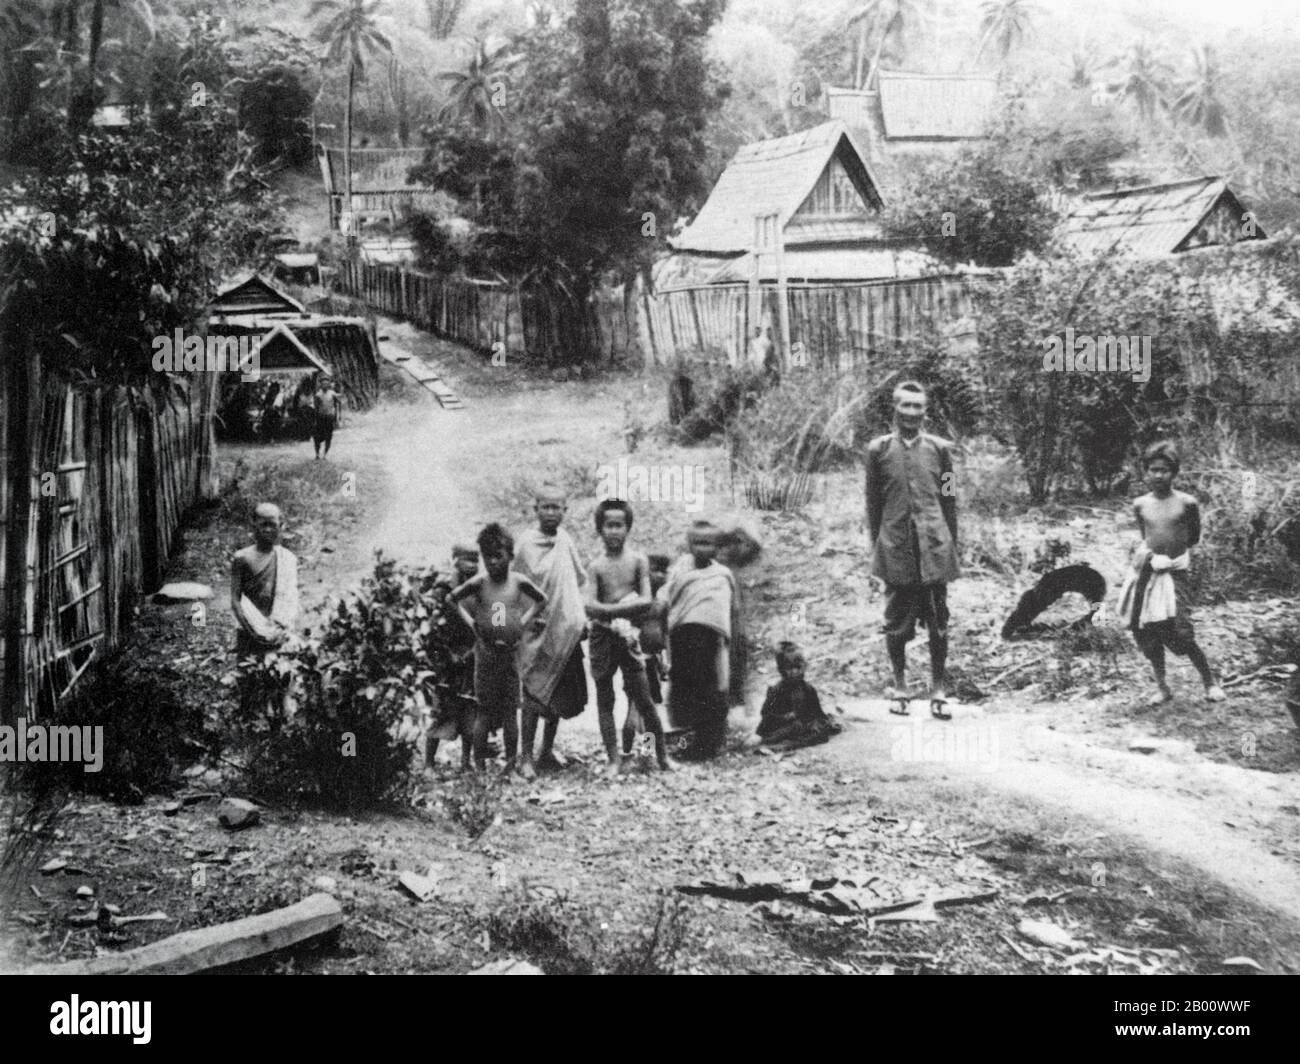 Laos: Eine Straße in Luang Prabang. Foto von Auguste Pavie (1847-1925), 1890. Luang Prabang war früher die Hauptstadt eines gleichnamigen Königreichs. Bis zur kommunistischen Machtübernahme 1975 war es die königliche Hauptstadt und Regierungssitz des Königreichs Laos. Die Stadt ist heute ein UNESCO-Weltkulturerbe. Stockfoto